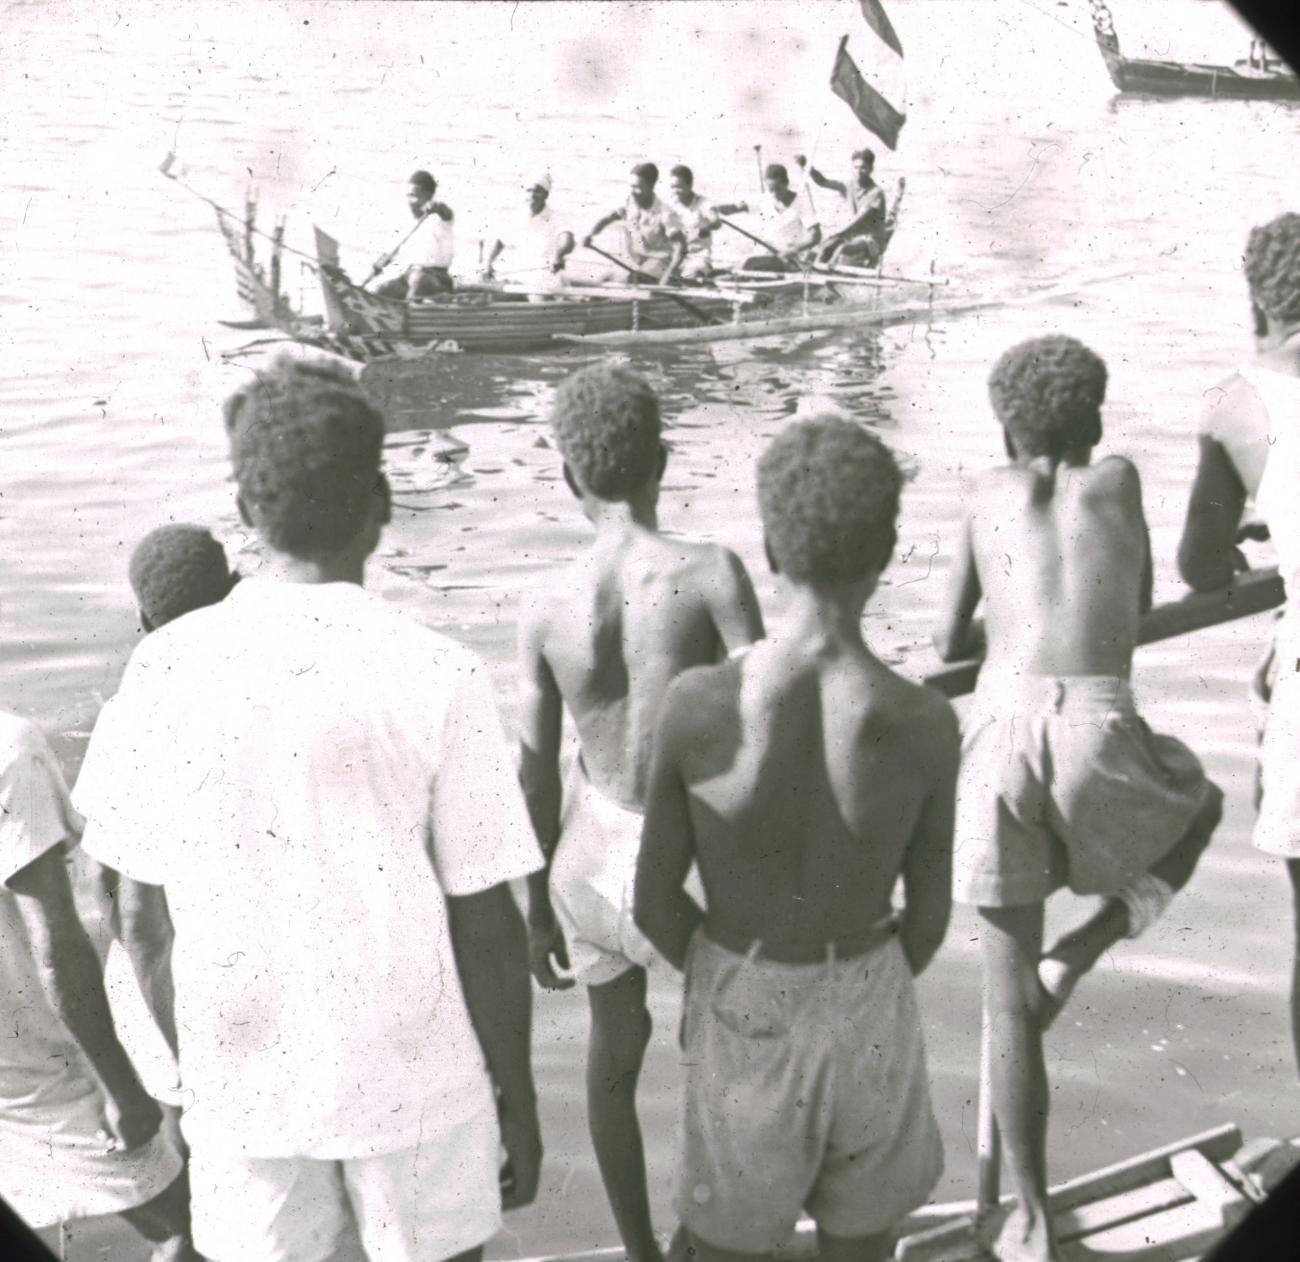 BD/329/13 - 
Groep Papoea-jongeren bekijkt vanaf de oever een prauw met dubbele uitleggers en versierde voorsteven
